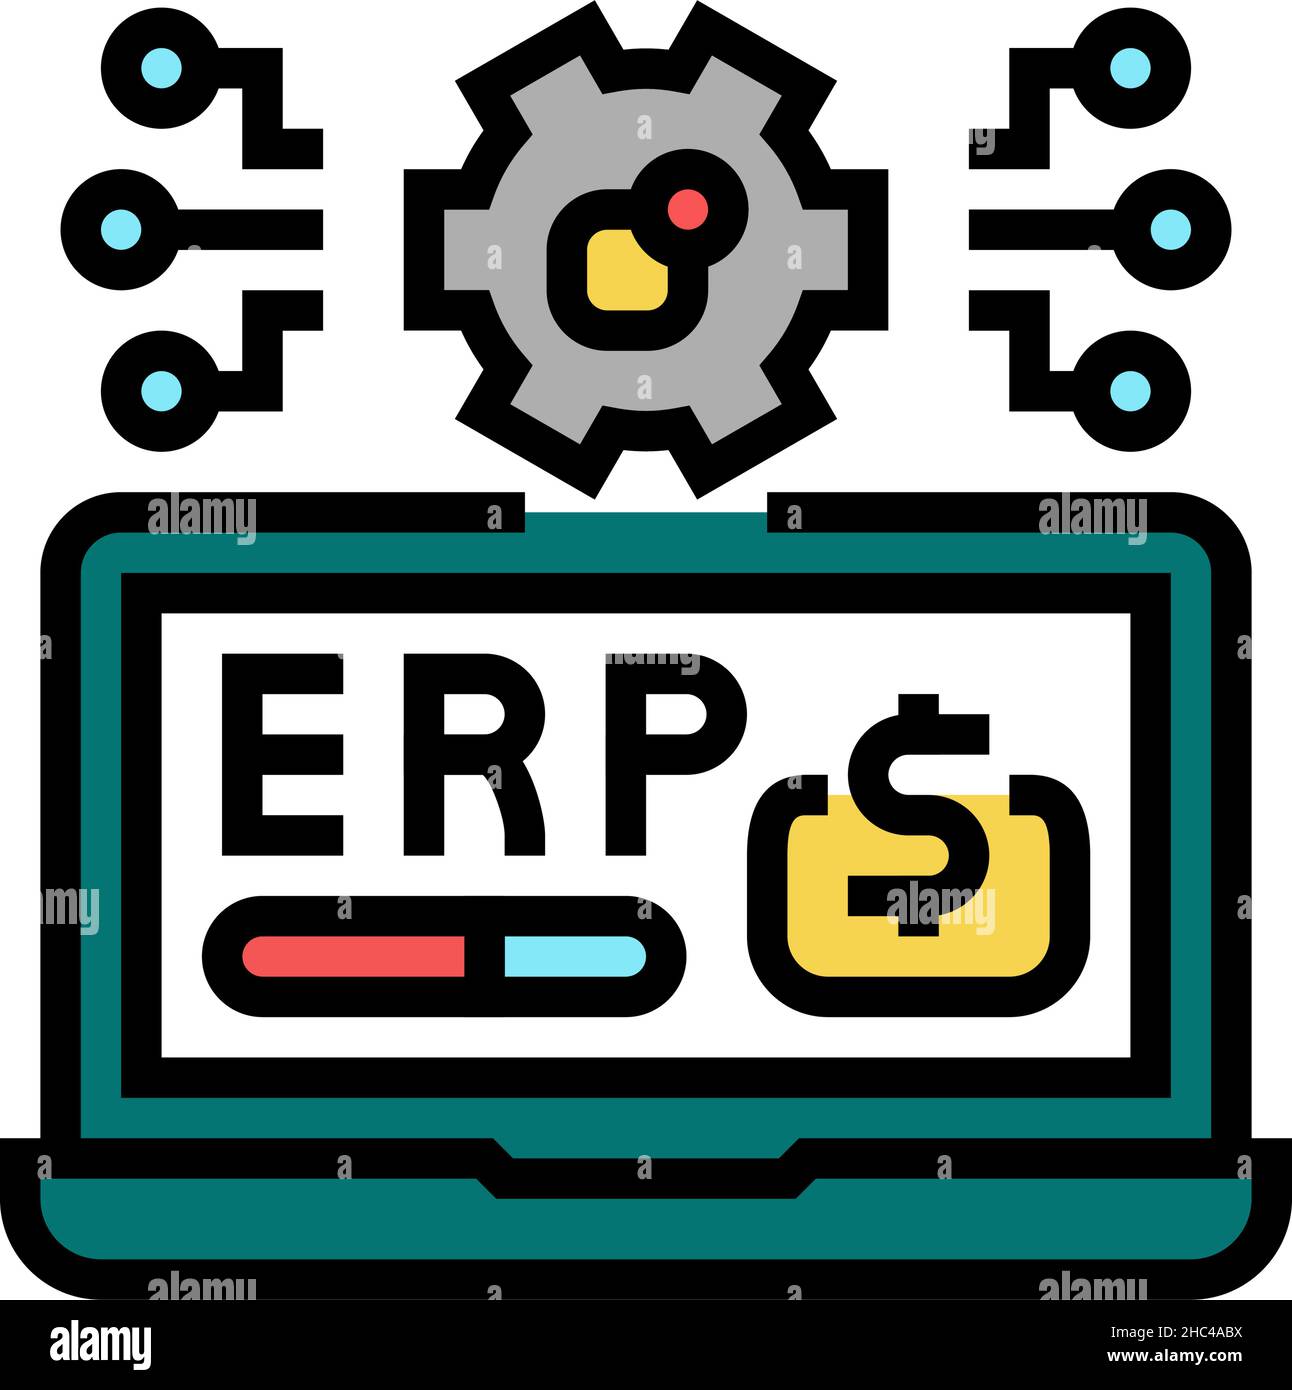 Genius Solutions ERP Software | Top 10 ERP